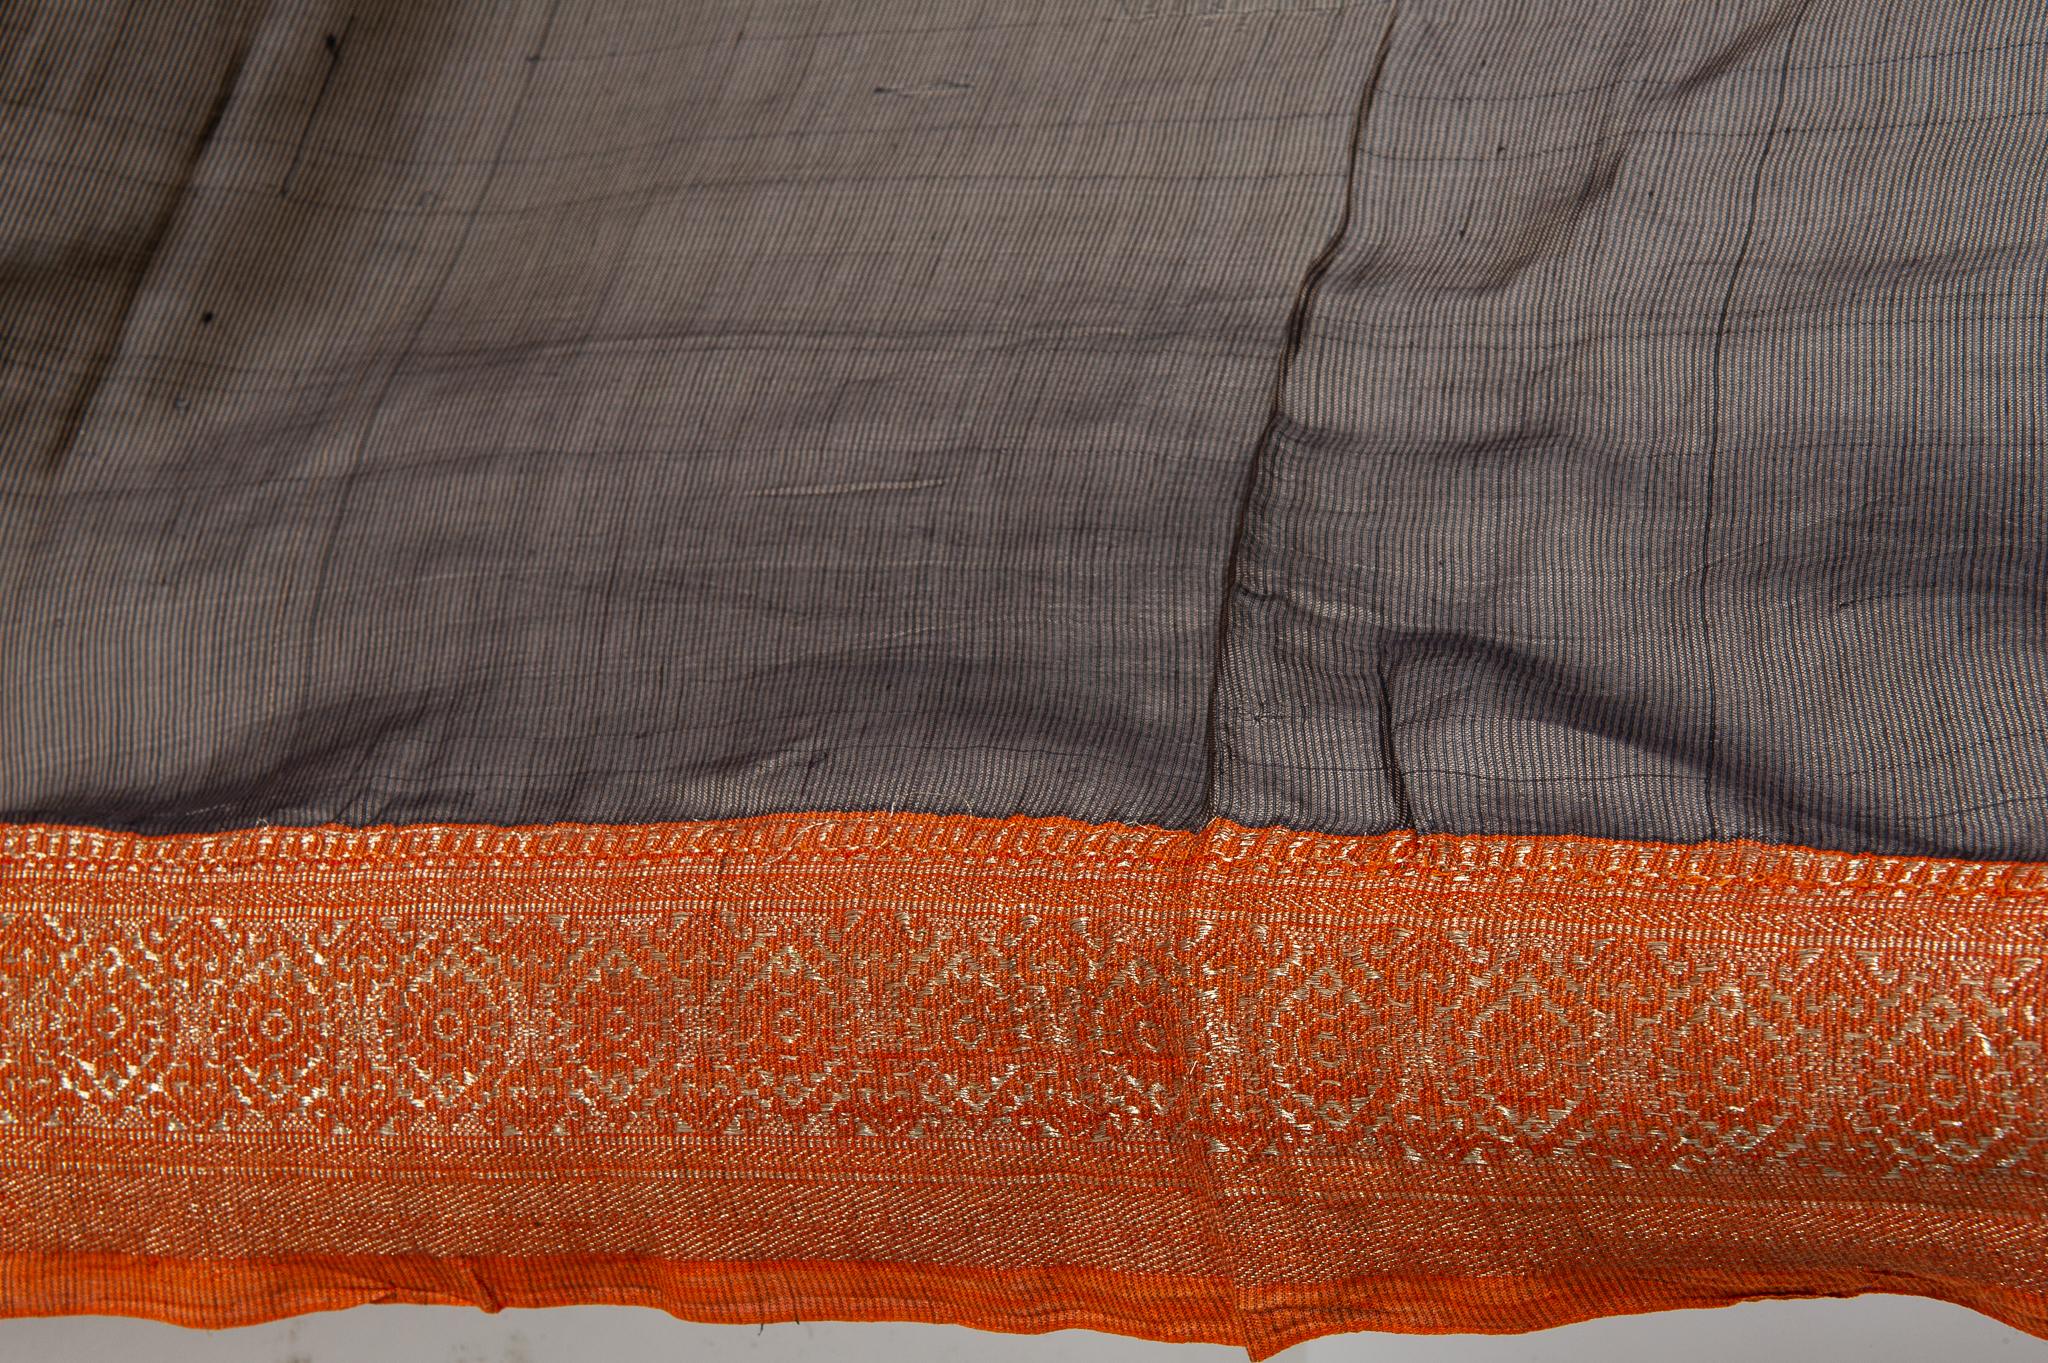  Indisches Sari-Sommerkleid in Braun, Rot und Goldbordüre, ebenfalls für den Abend im Angebot 1